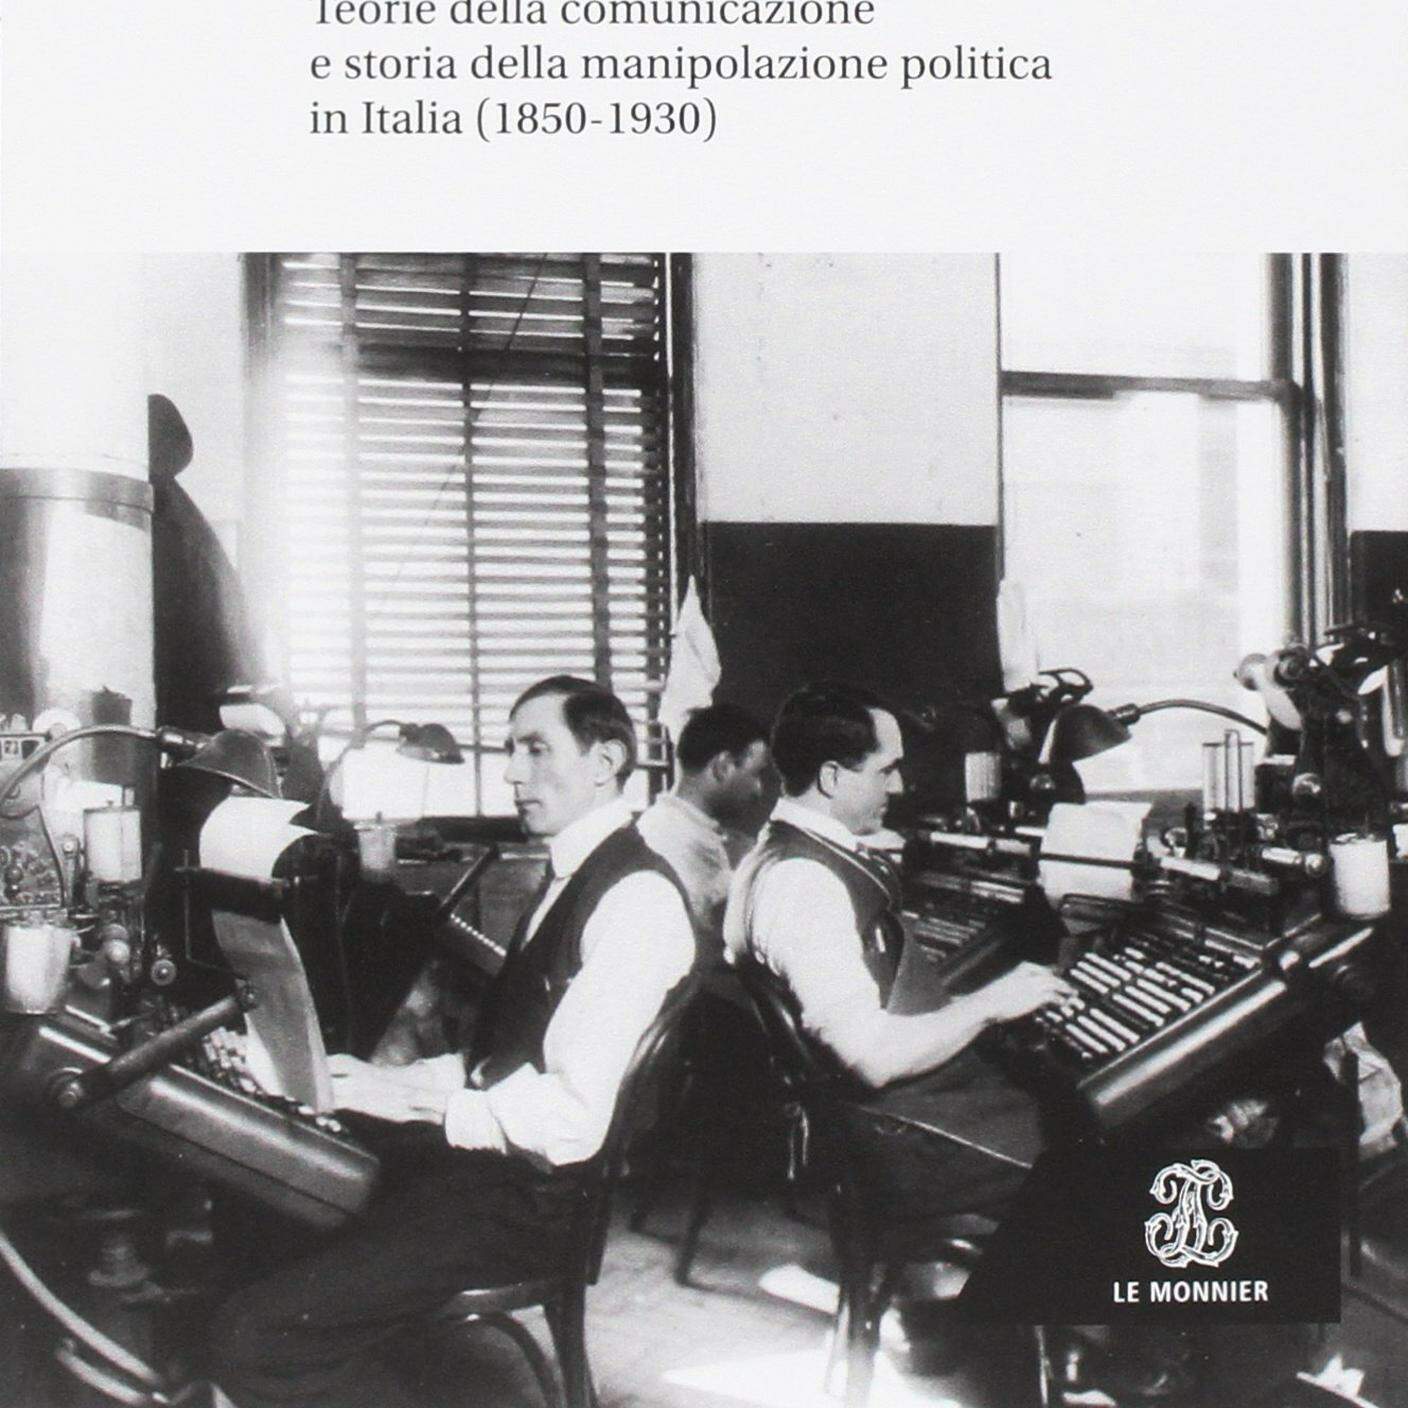 Massimiliano Panarari, "Poteri e informazione", Mondadori education